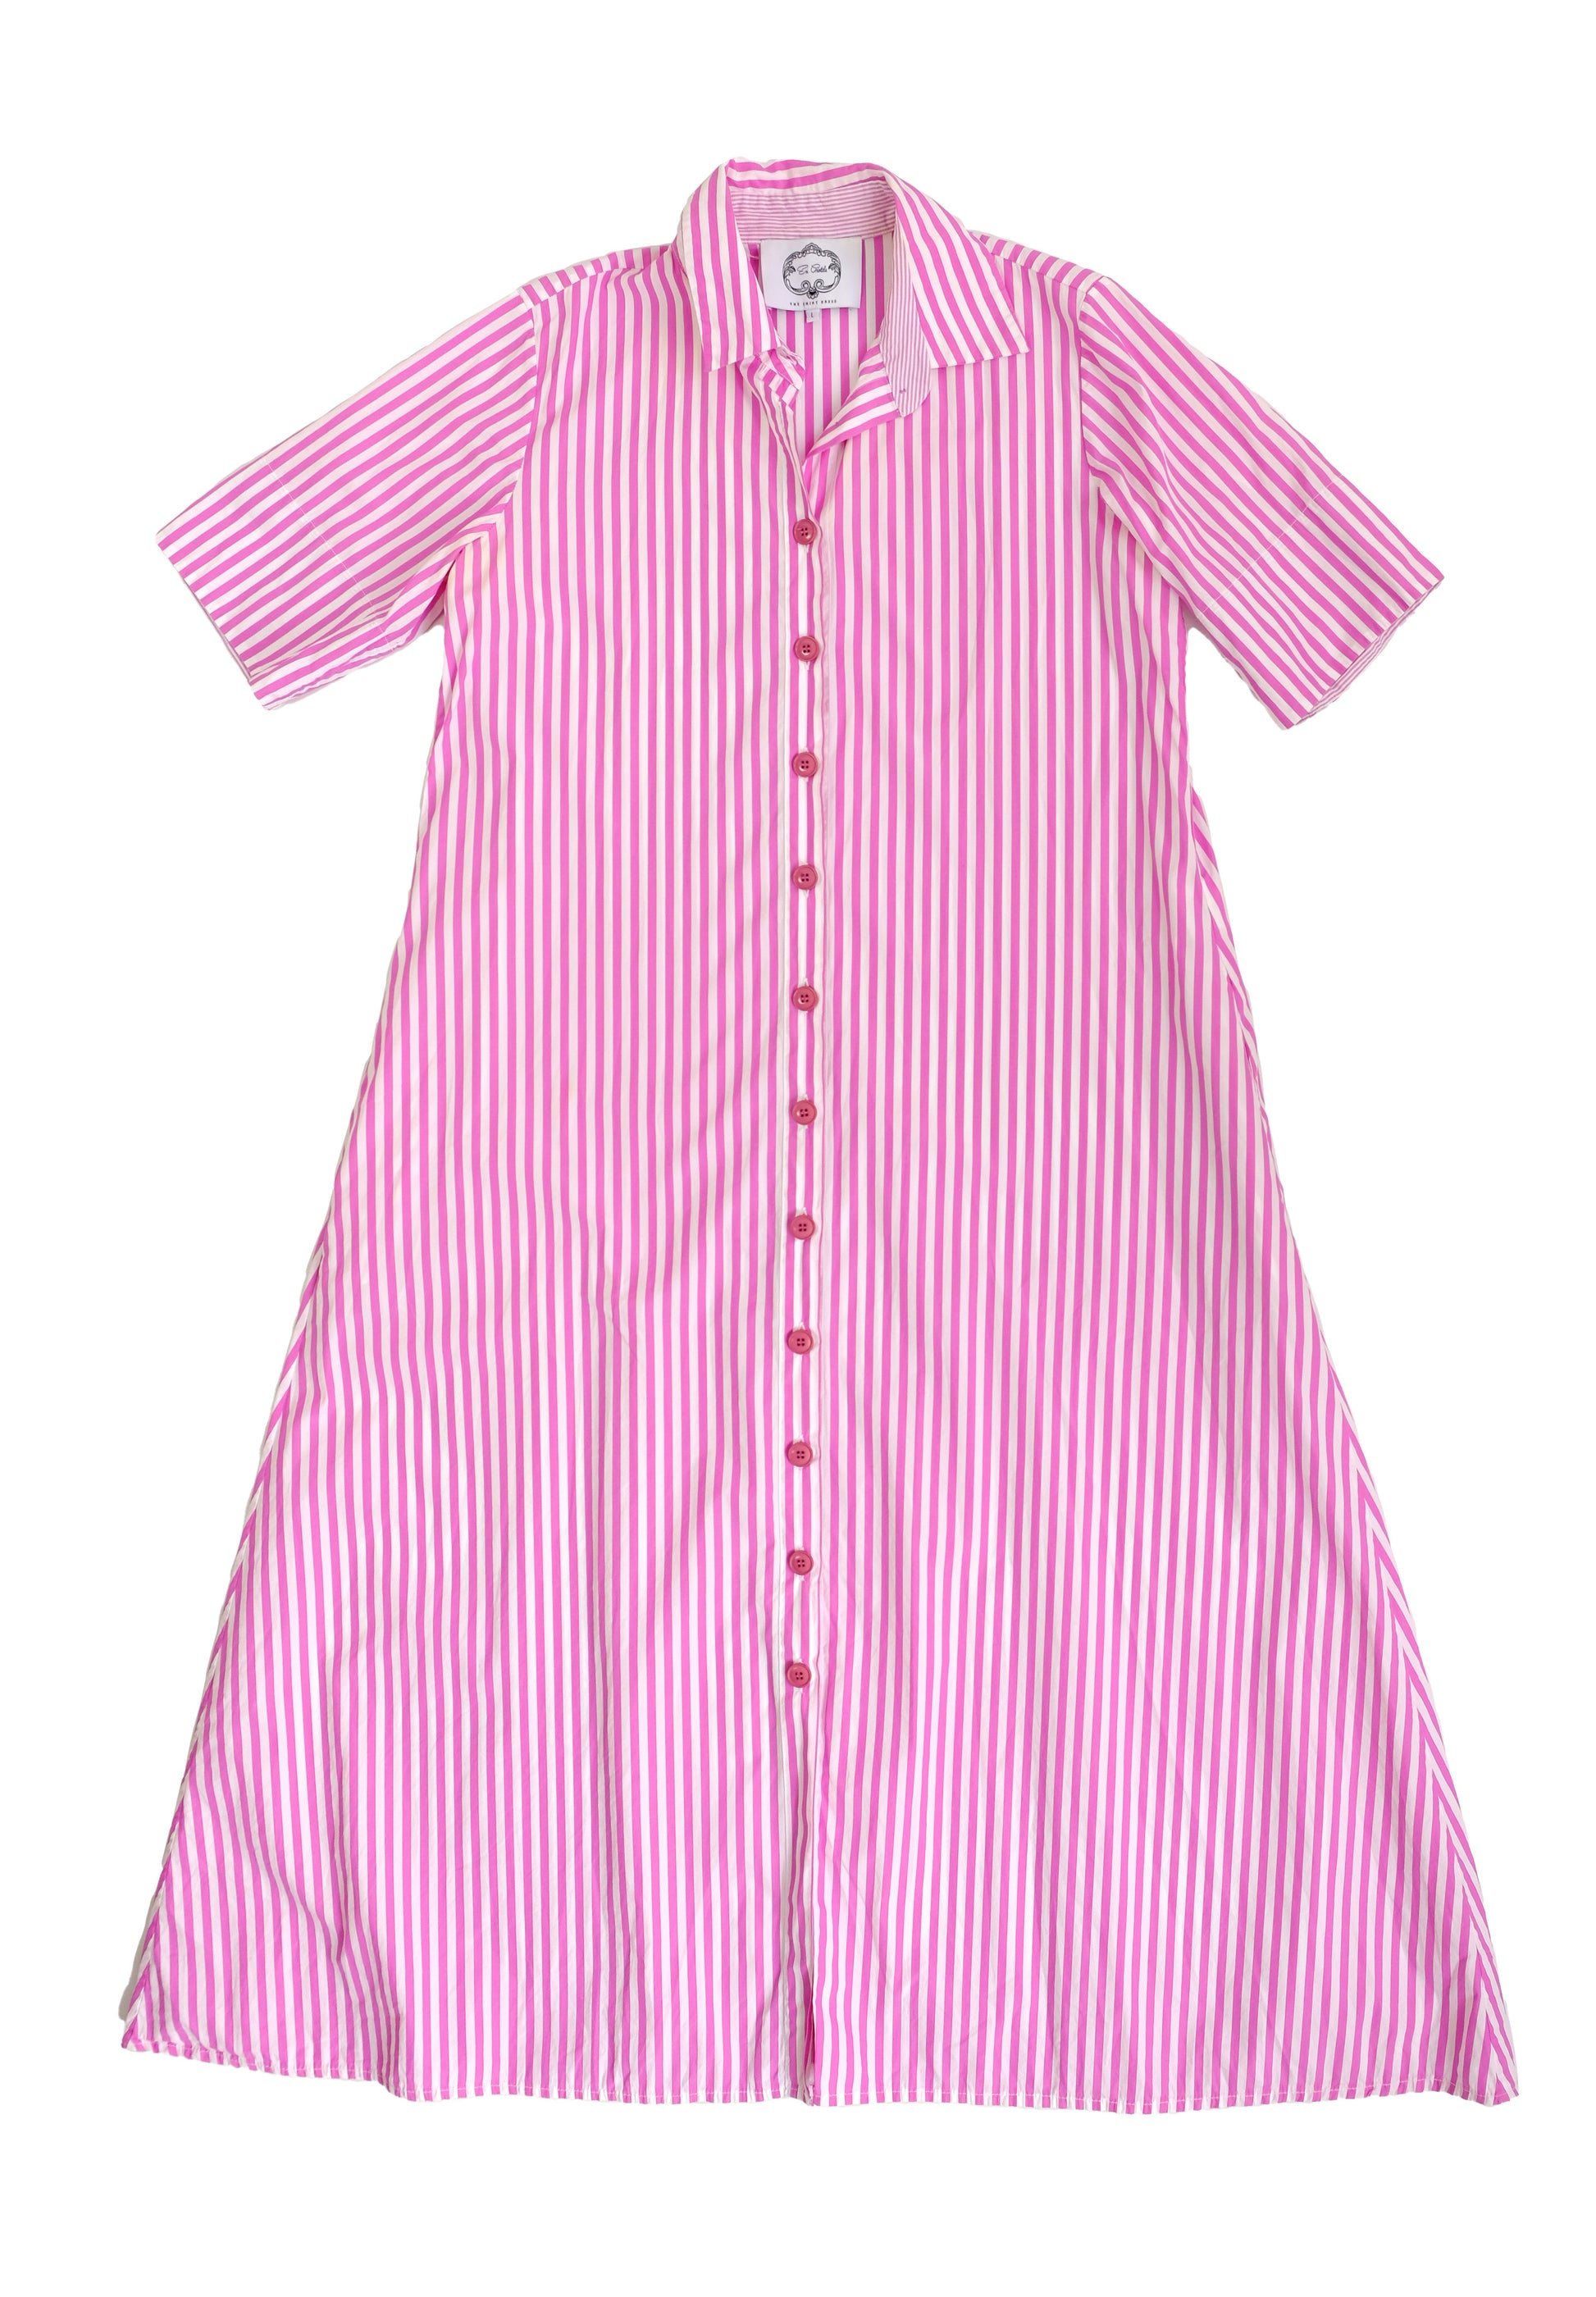 Evi Grintela Pink Candy Stripe Summer Shirt Dress, L